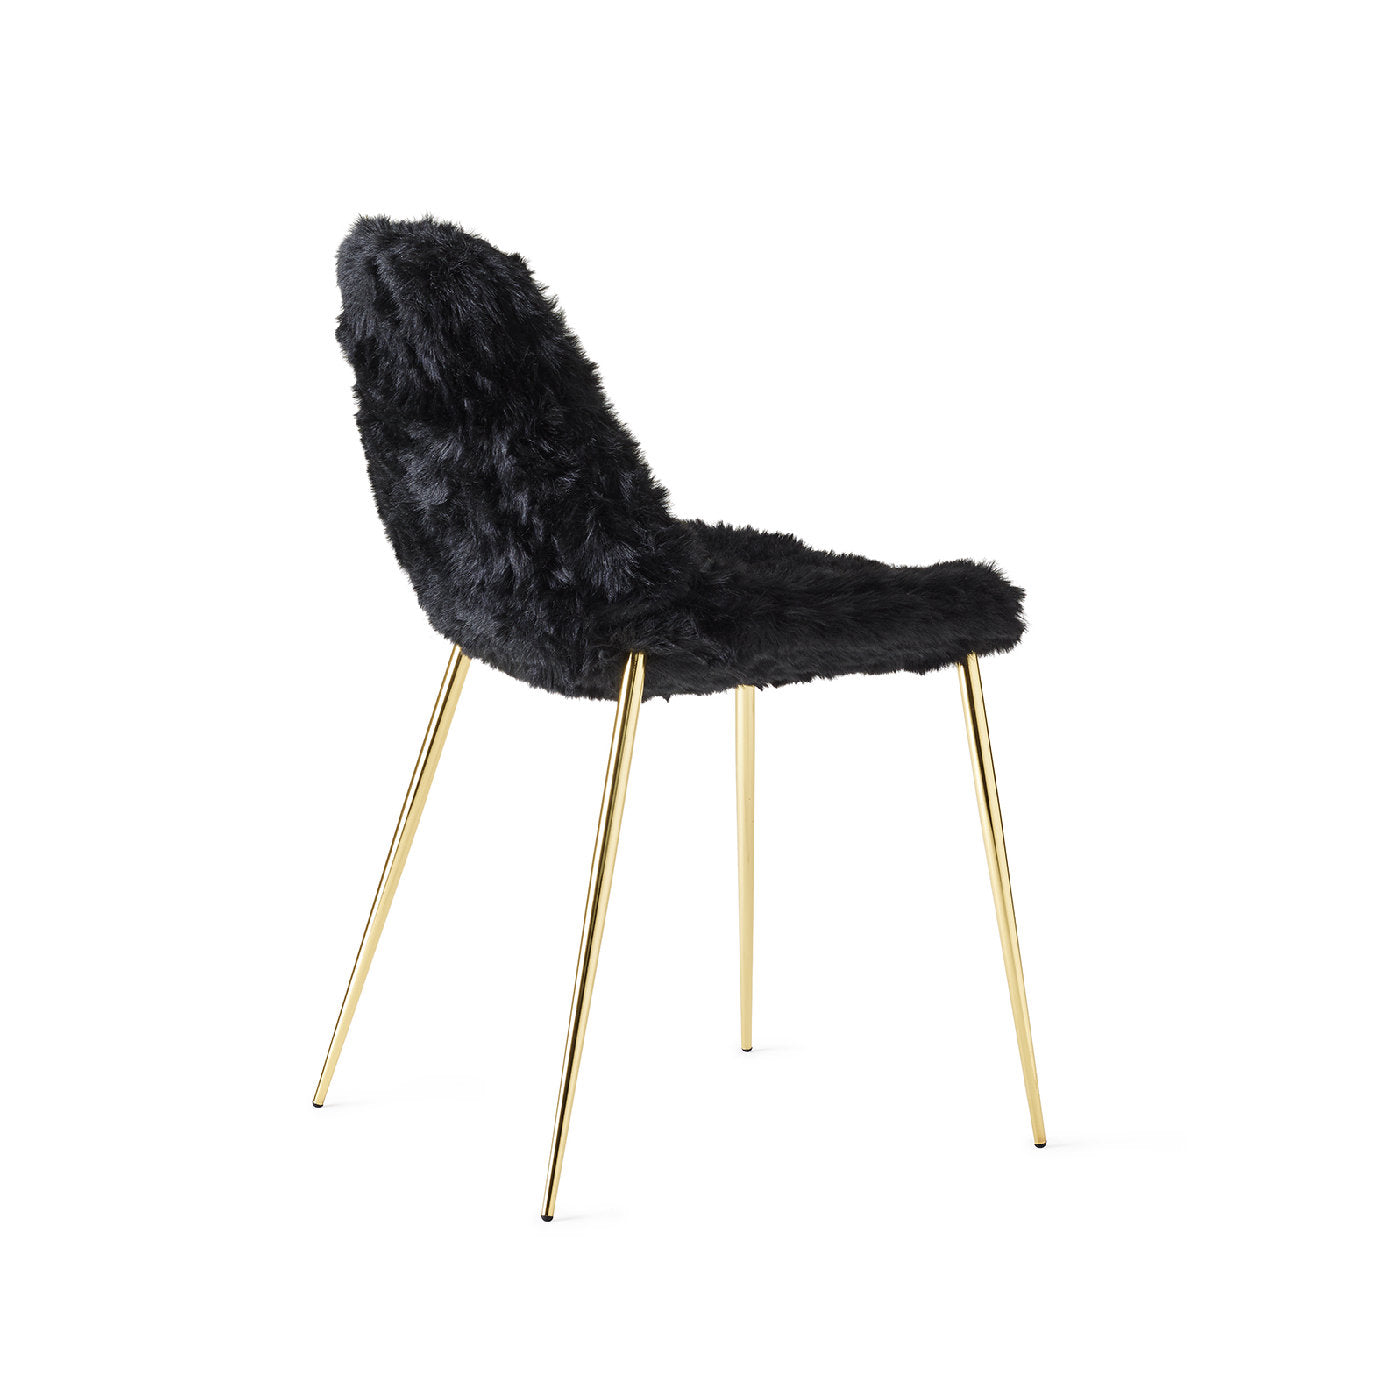 Mammamia Black Fur Chair - Alternative view 1